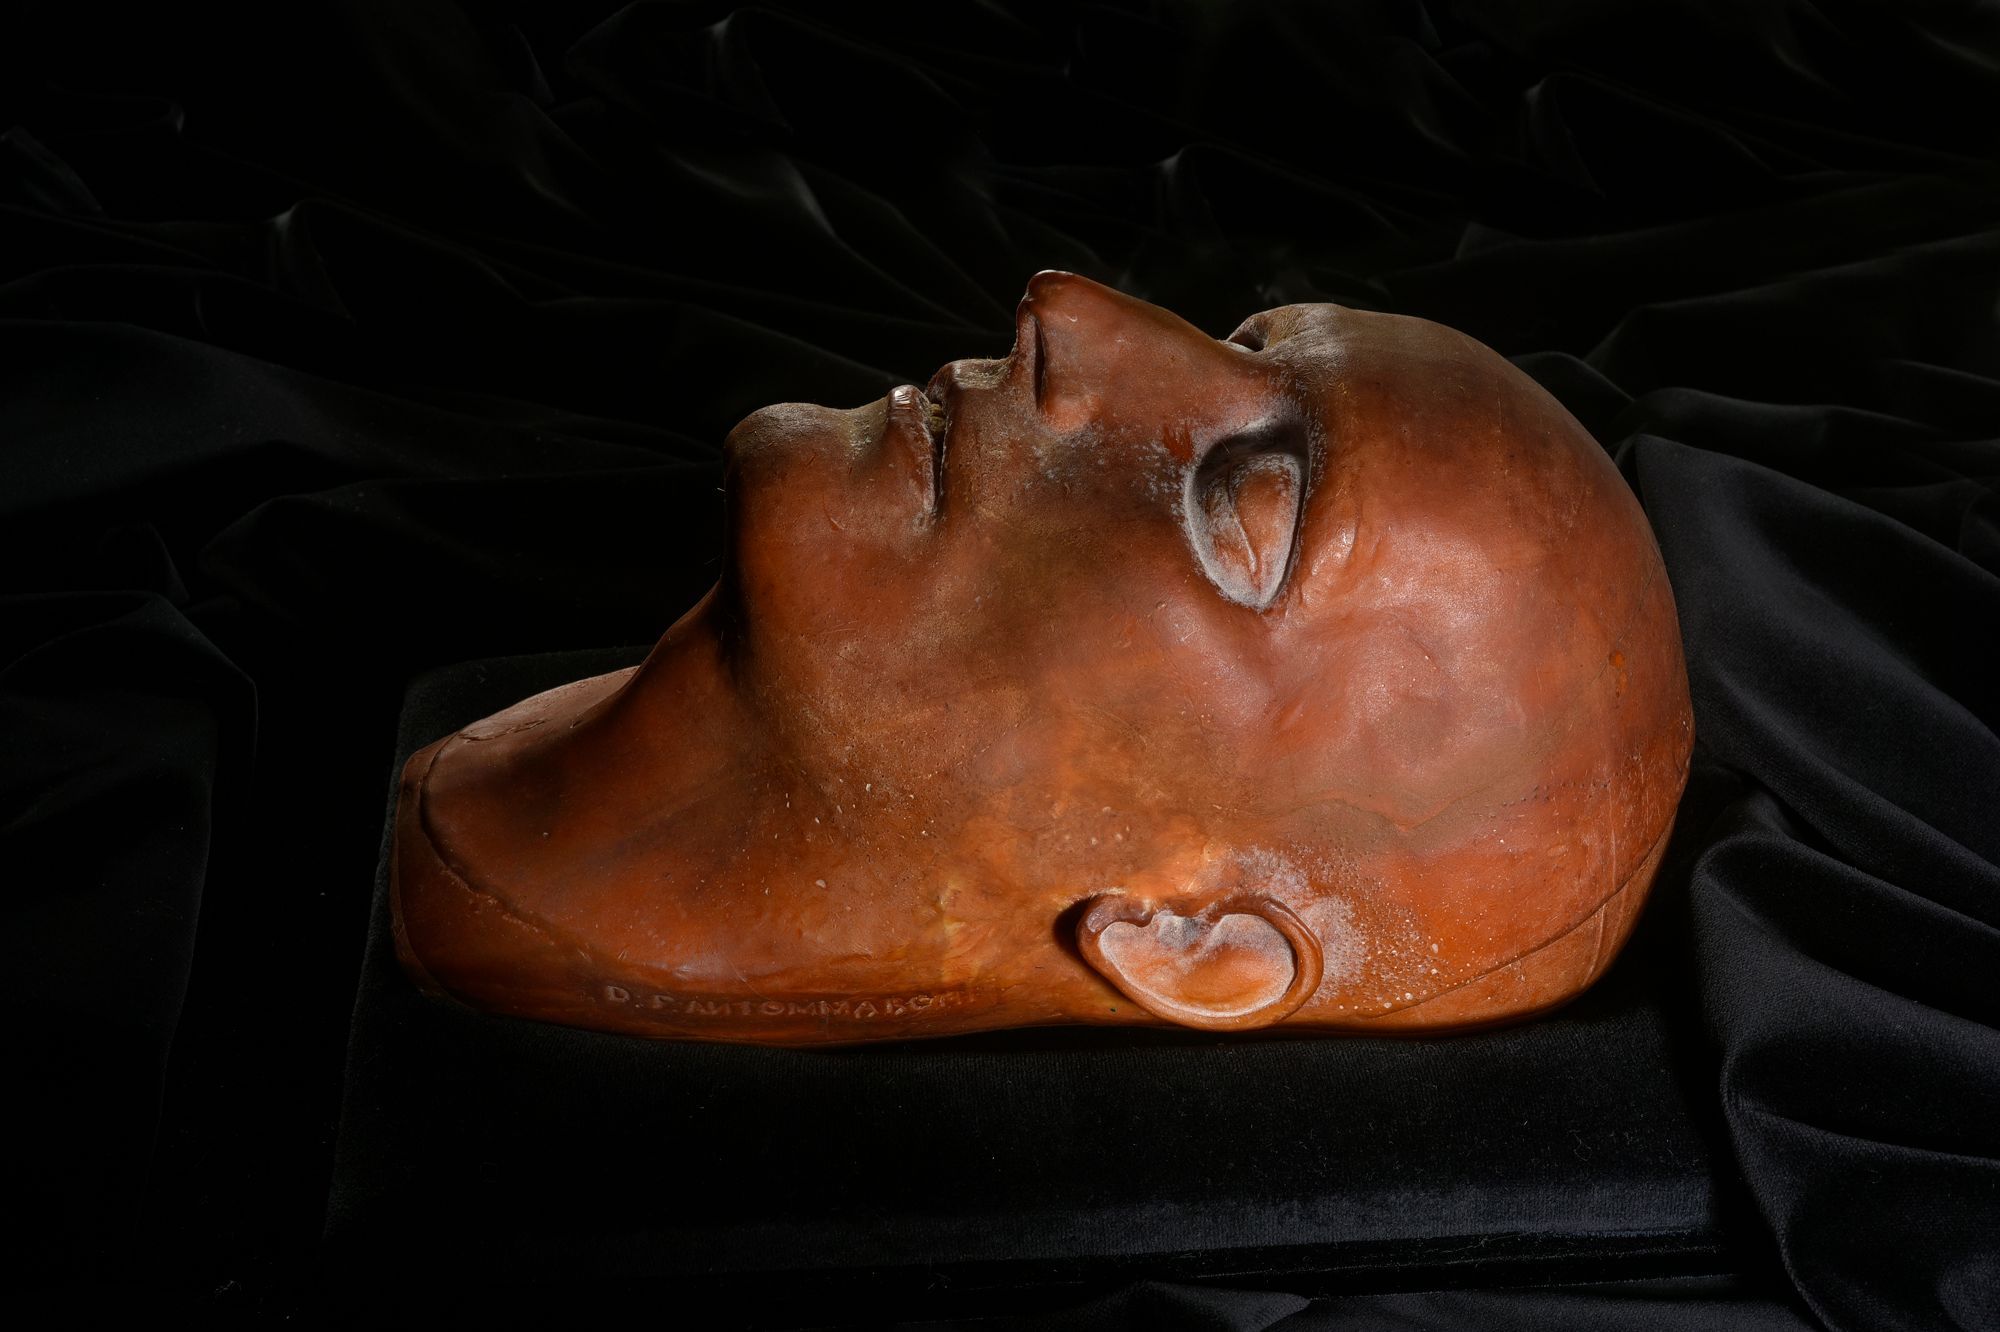 Un Tres Rare Masque Mortuaire De Napoleon Vendu Aux Encheres